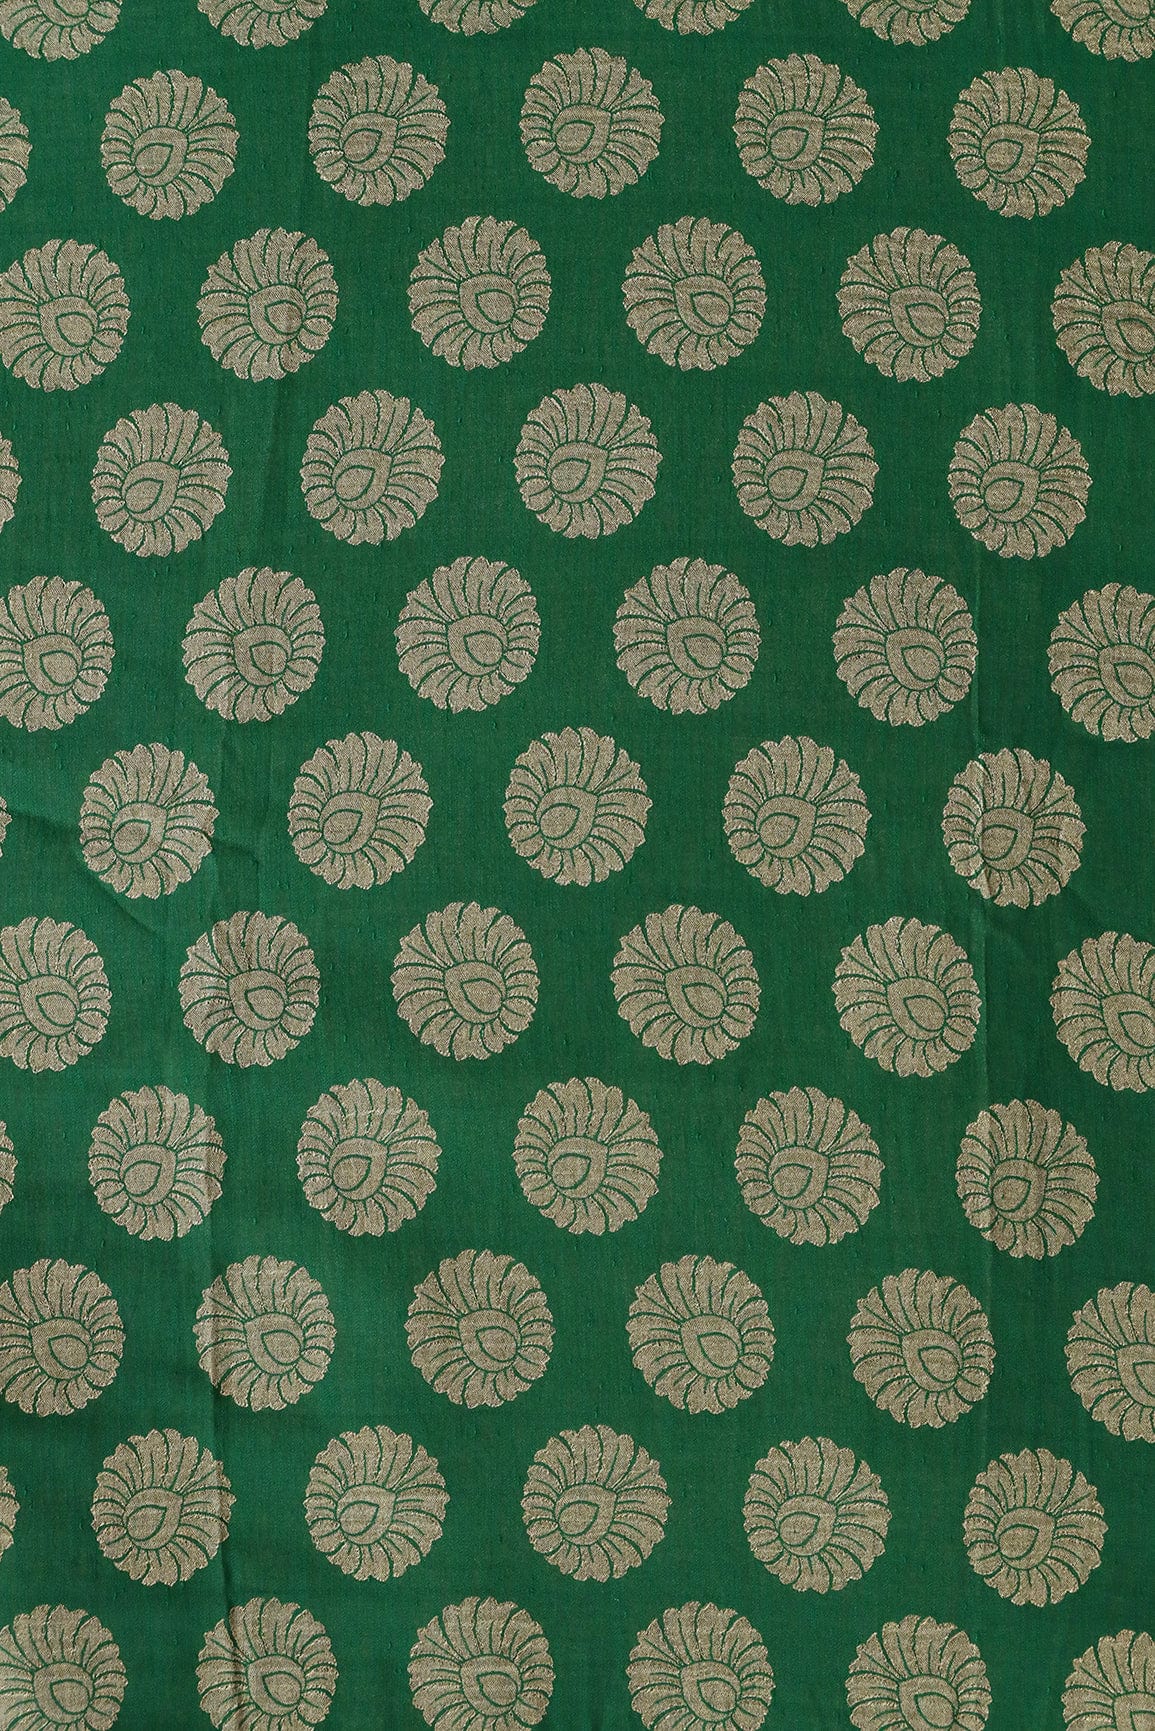 doeraa Banarasi Fabrics Green Ethnic Butta Pure Taspa Zari Banarasi Jacquard Fabric